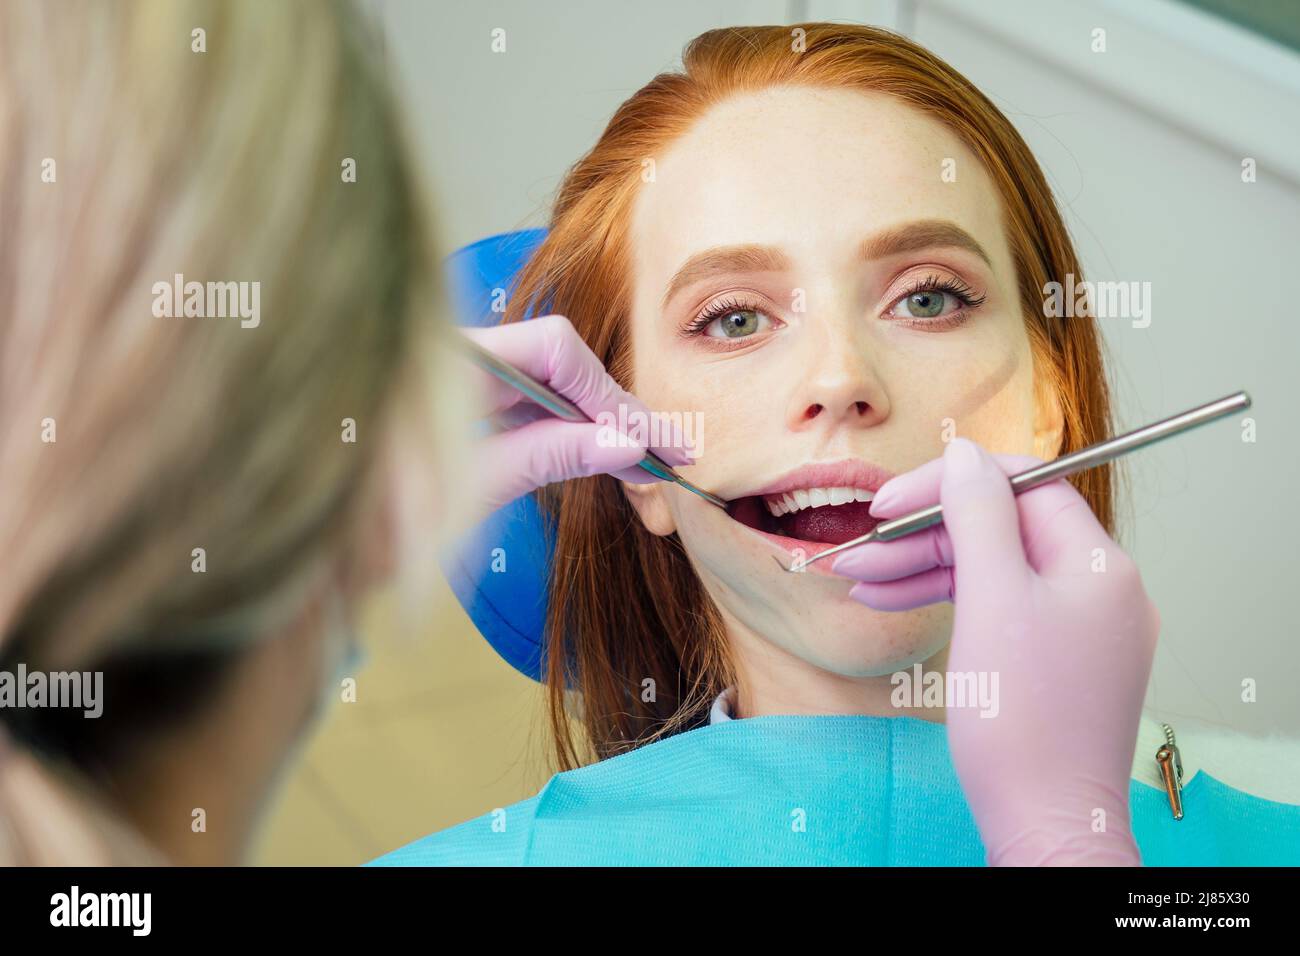 Portrait d'une belle fille client souriante au gingembre rougeâprée dans une chaise dentaire dans un cabinet dentaire.elle n'est pas peur Banque D'Images